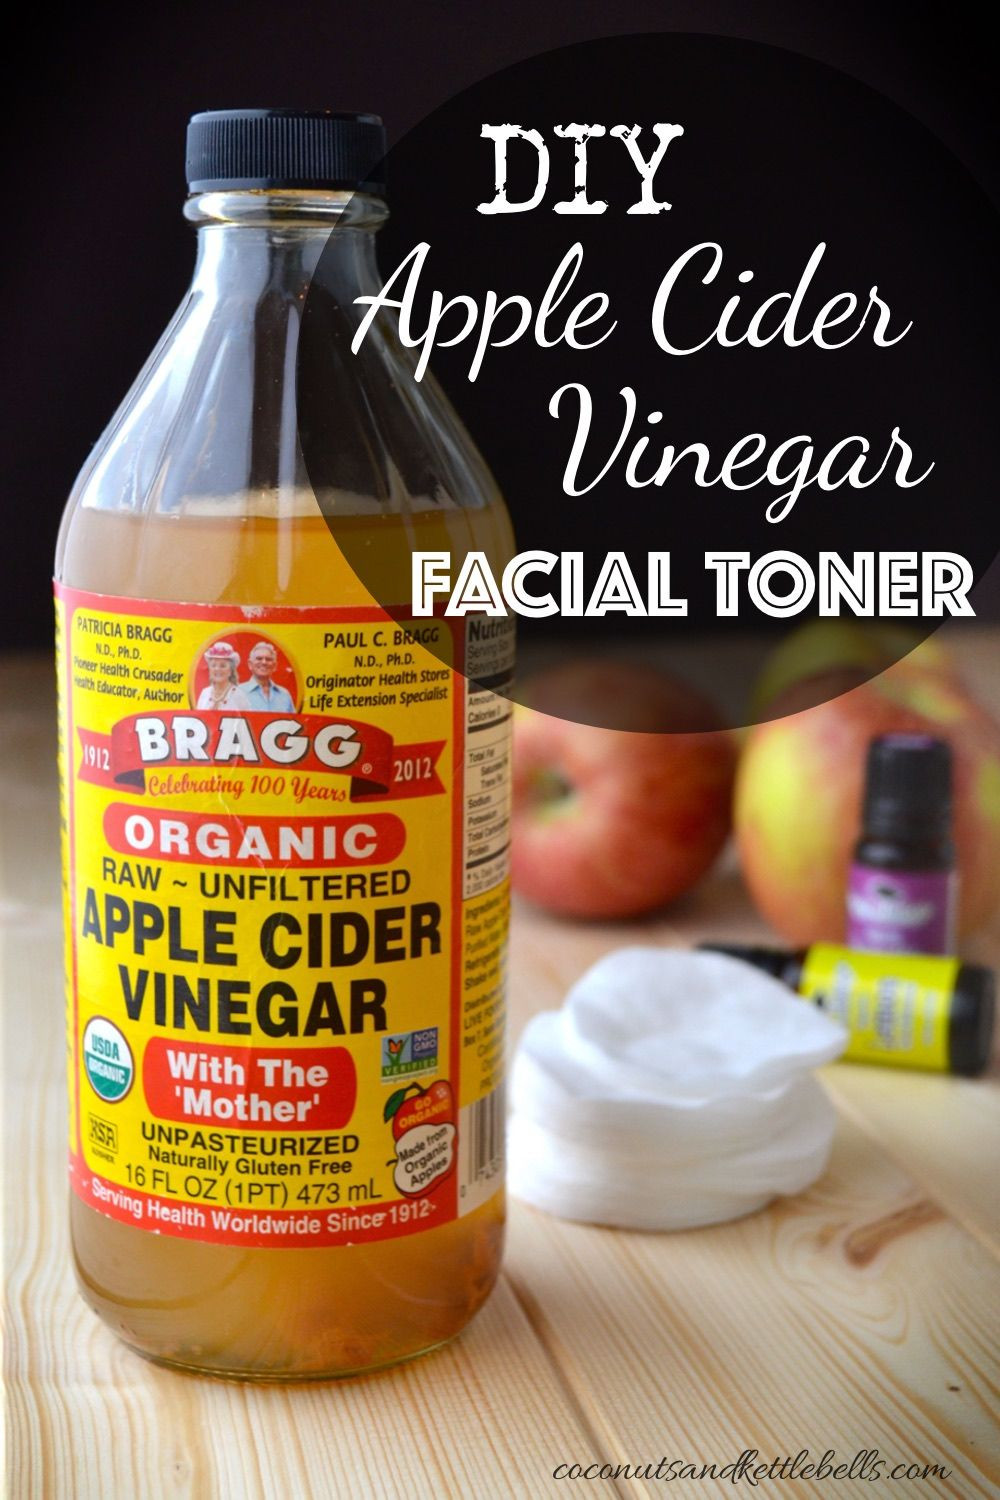 DIY Hair Toner With Vinegar
 Best 25 Apple cider vinegar toner ideas on Pinterest